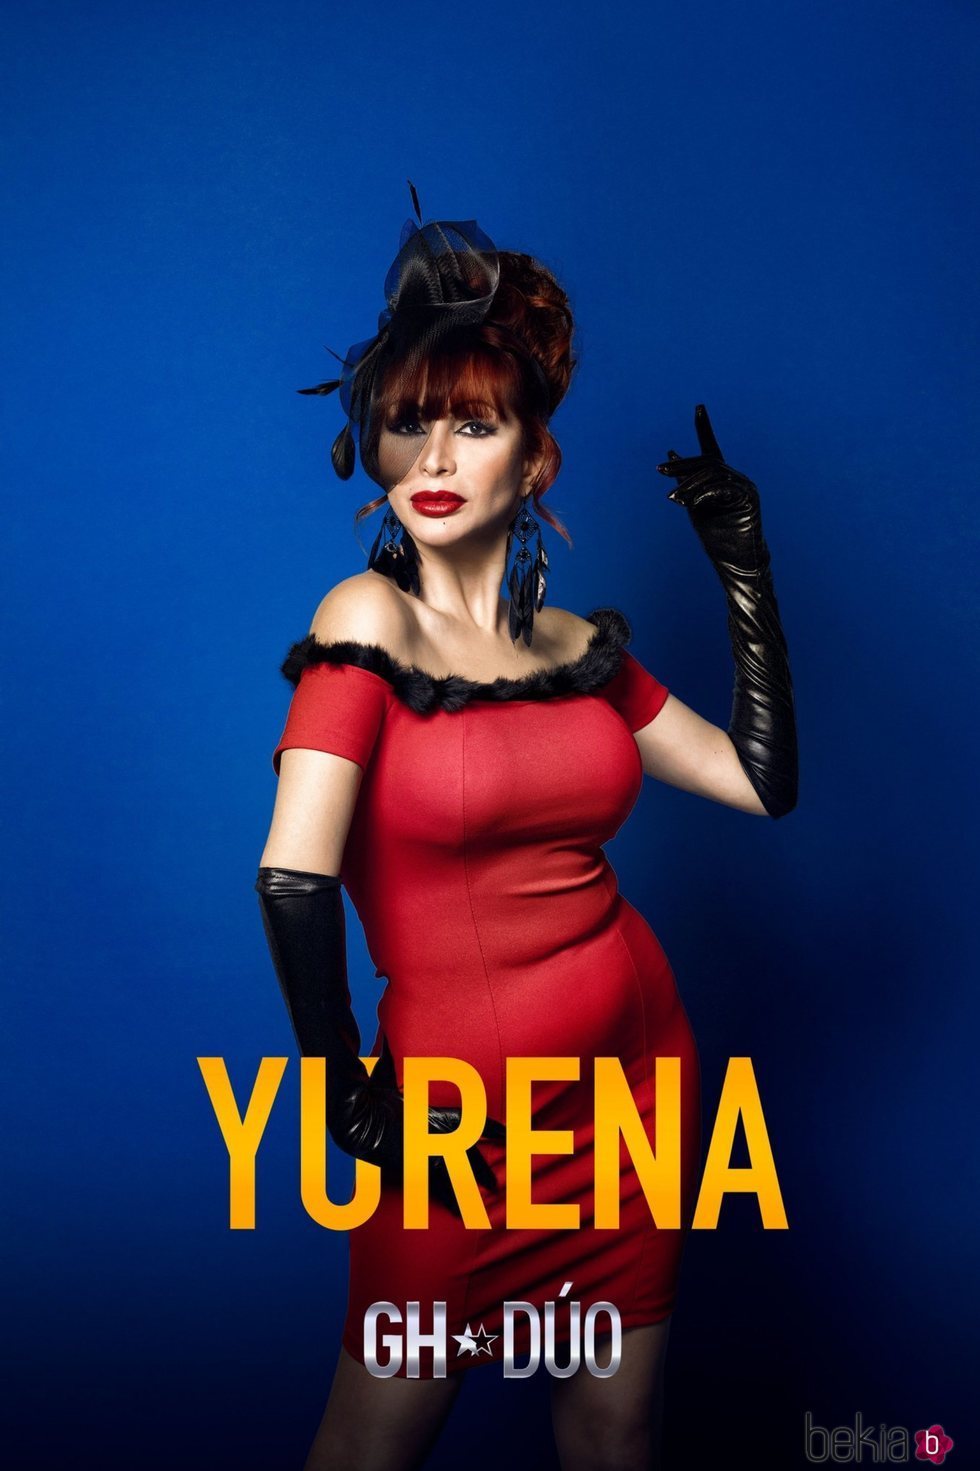 Fotografía promocional de Yurena como concursante de 'GH Dúo'